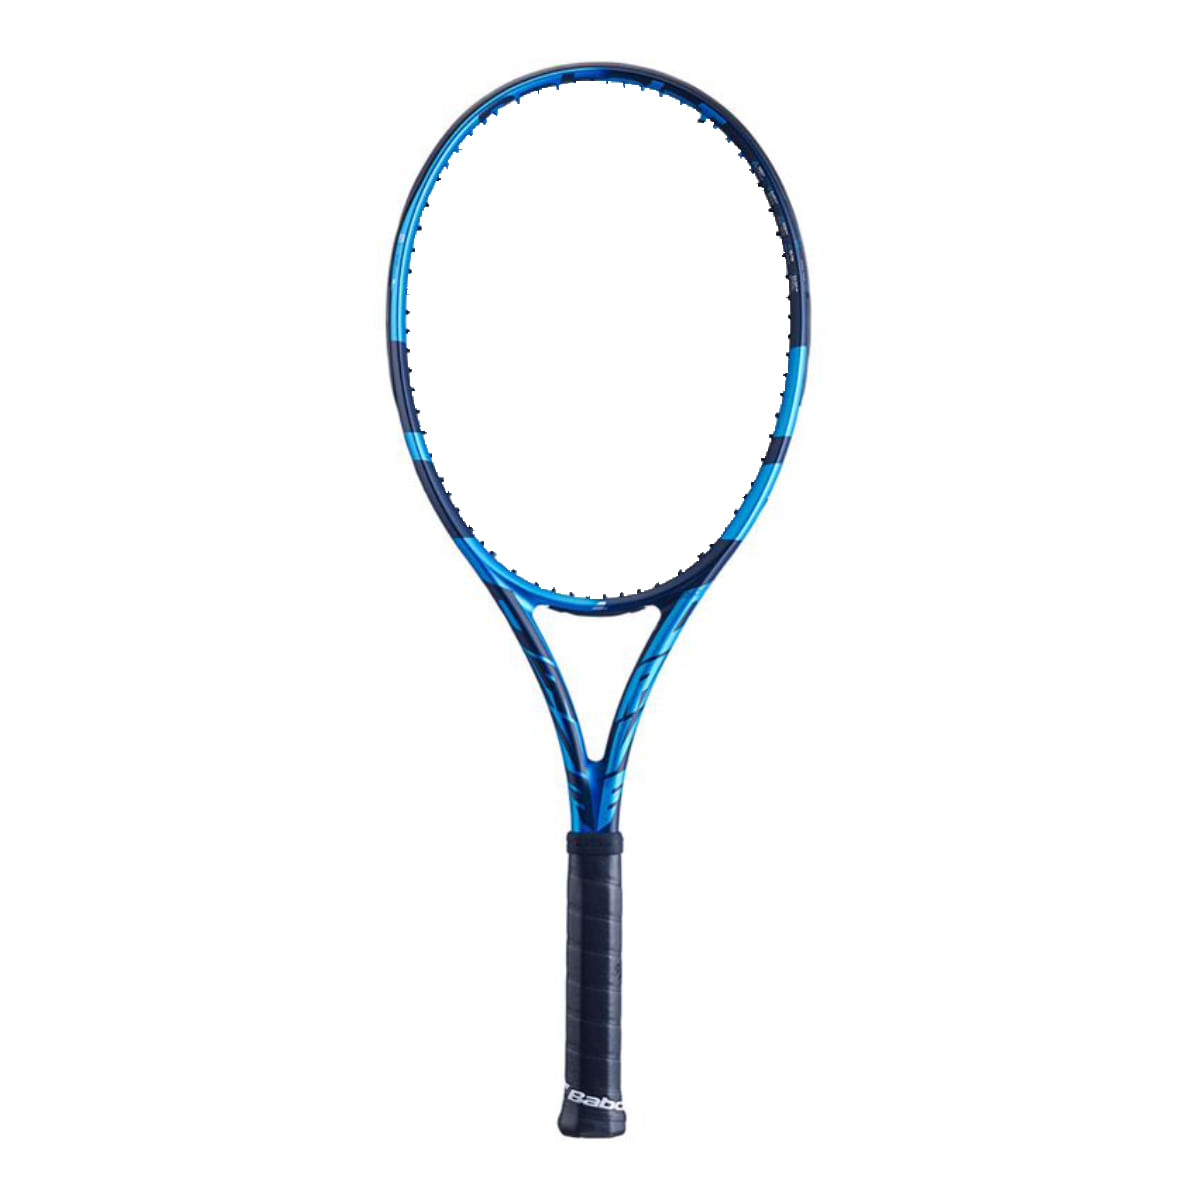 Babolat Pure Drive Tennis - Als.com